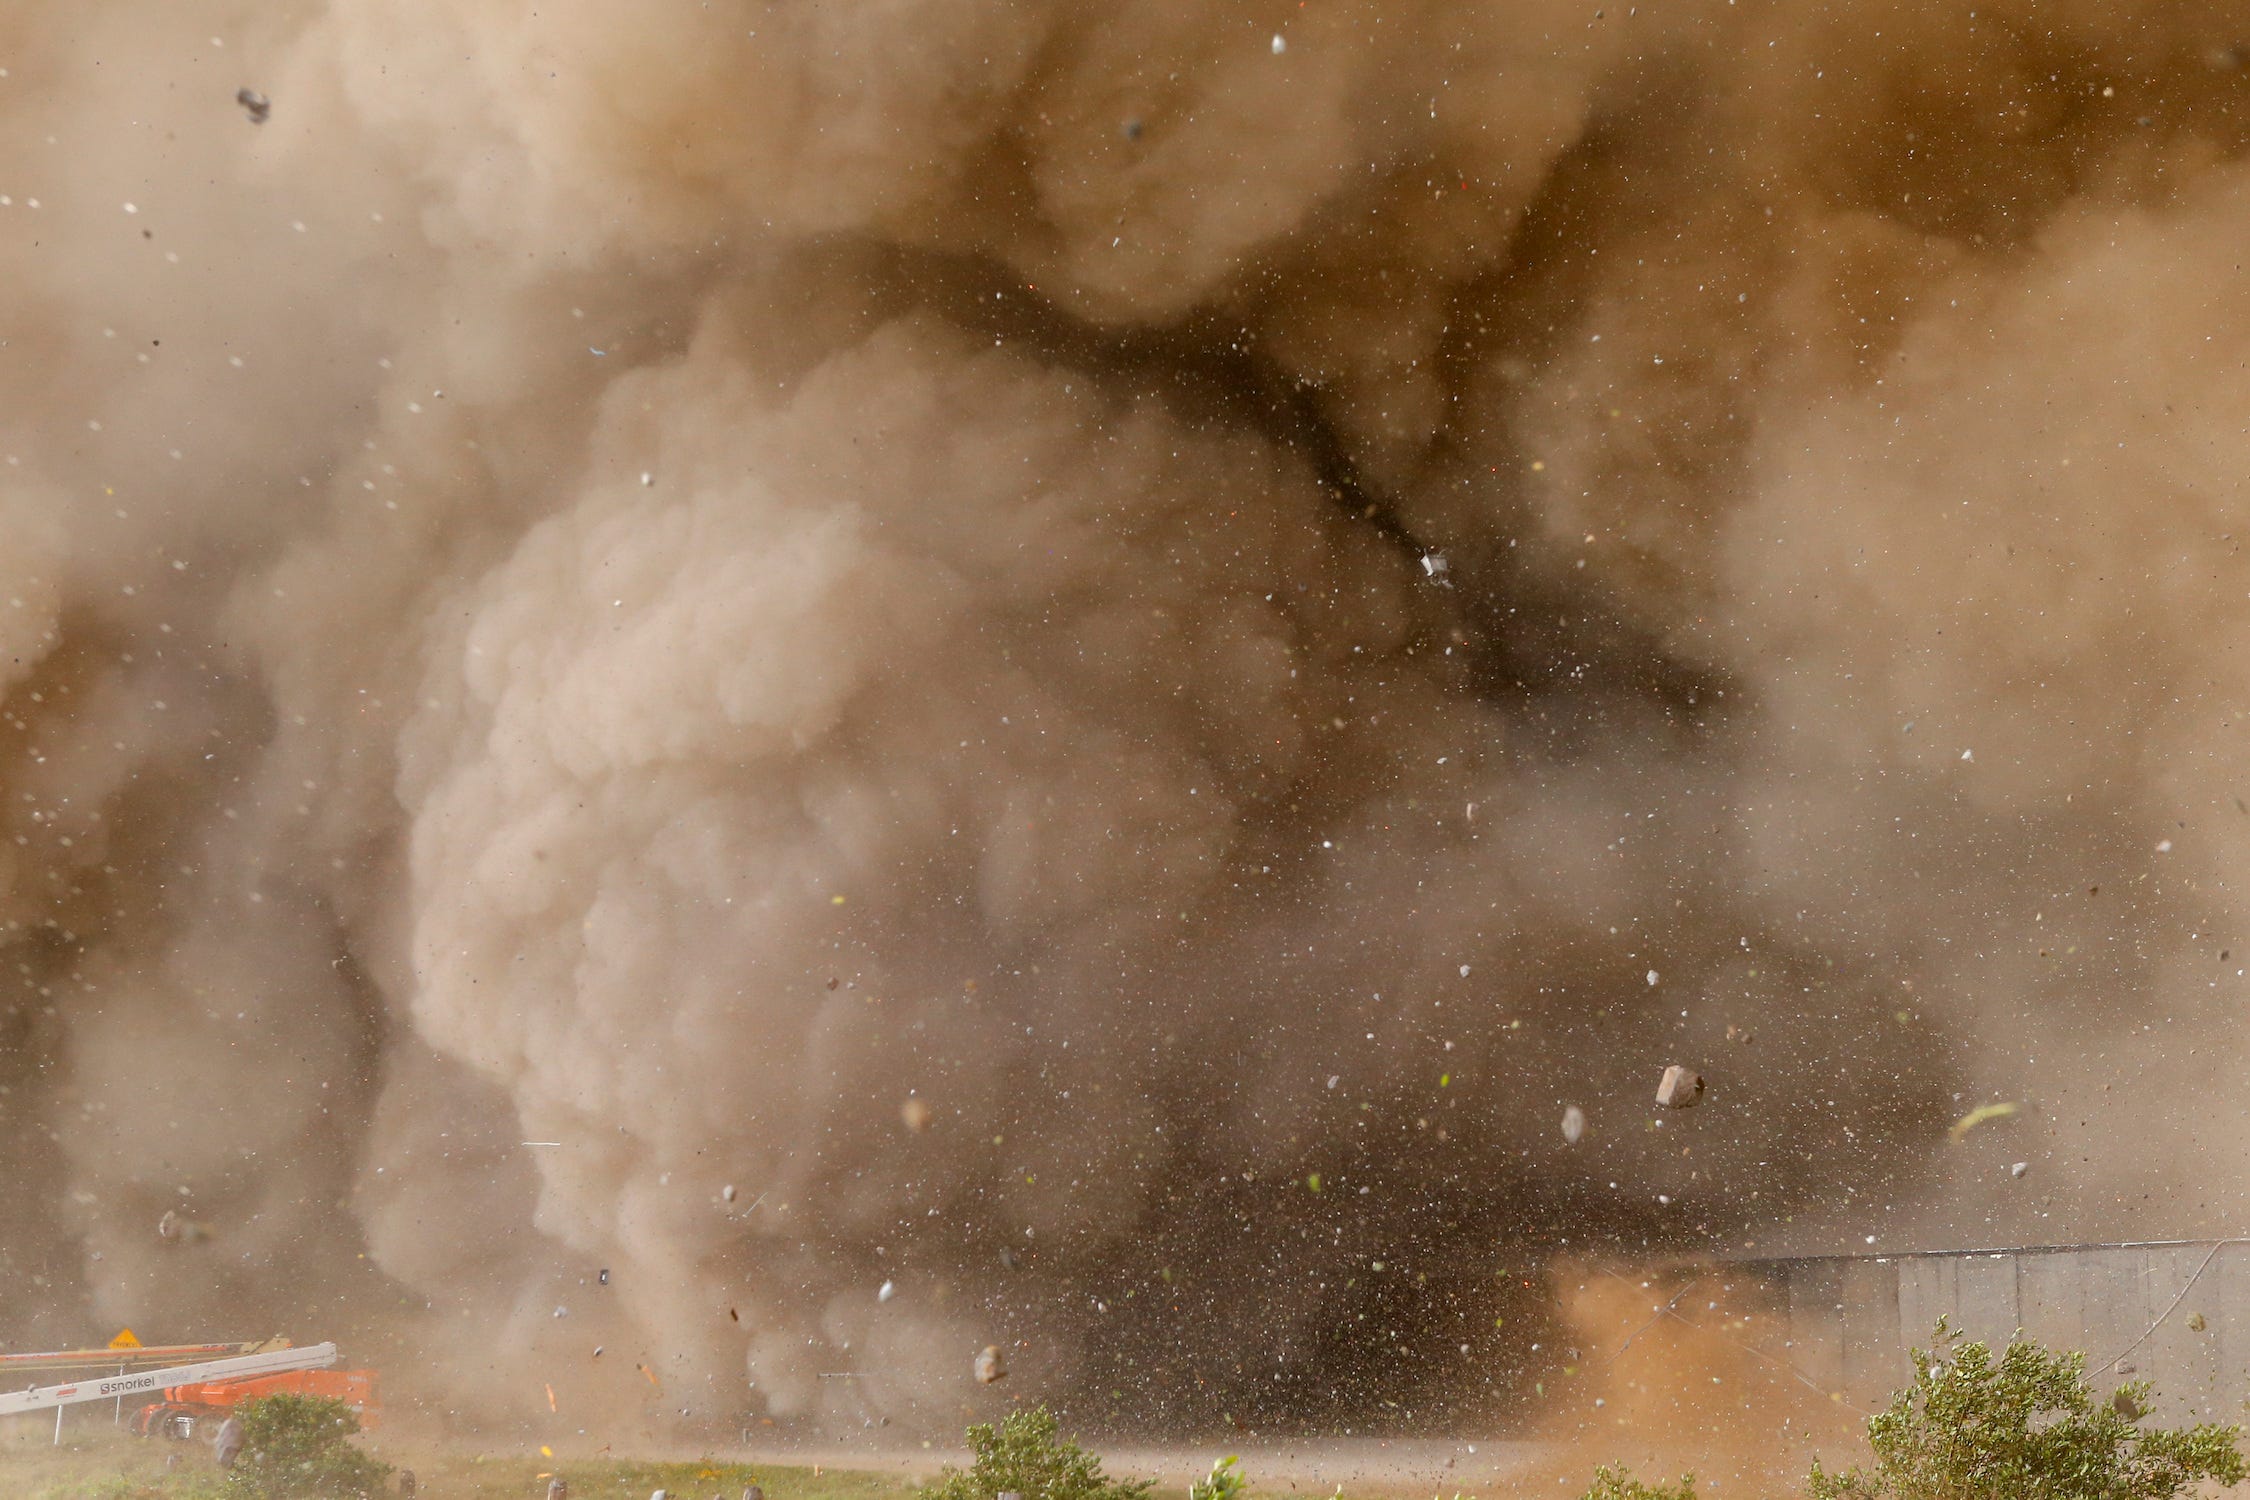 Riesige Rauchwolke mit herumfliegenden Steinen und Trümmern vom Raketenstart eines Raumschiffs verschluckt die Ausrüstung, die ein Grundstück mit Büschen umzäunt